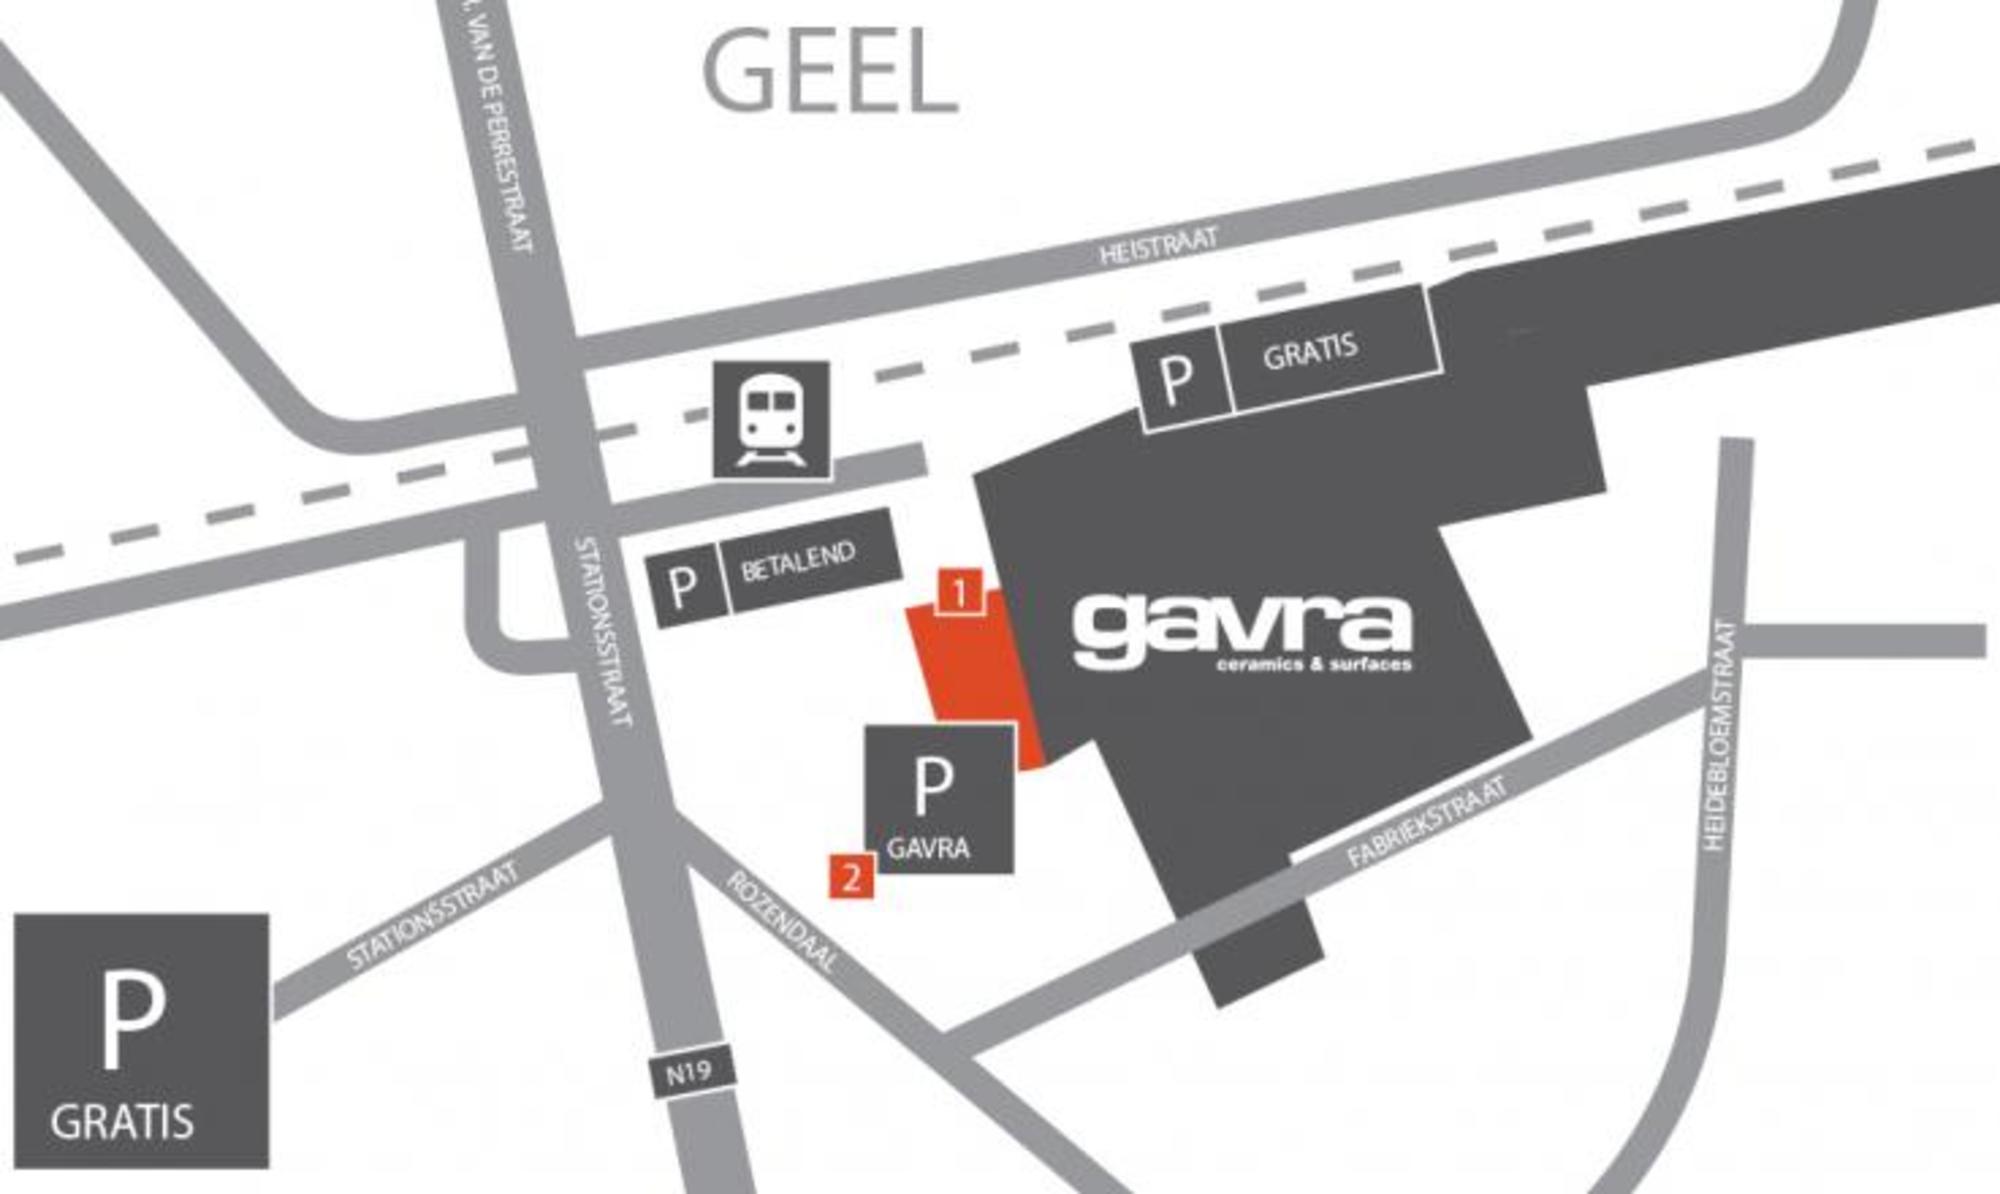 Gavra showrooms Tegels & Surfaces Antwerpen Geel plan route beschrijving